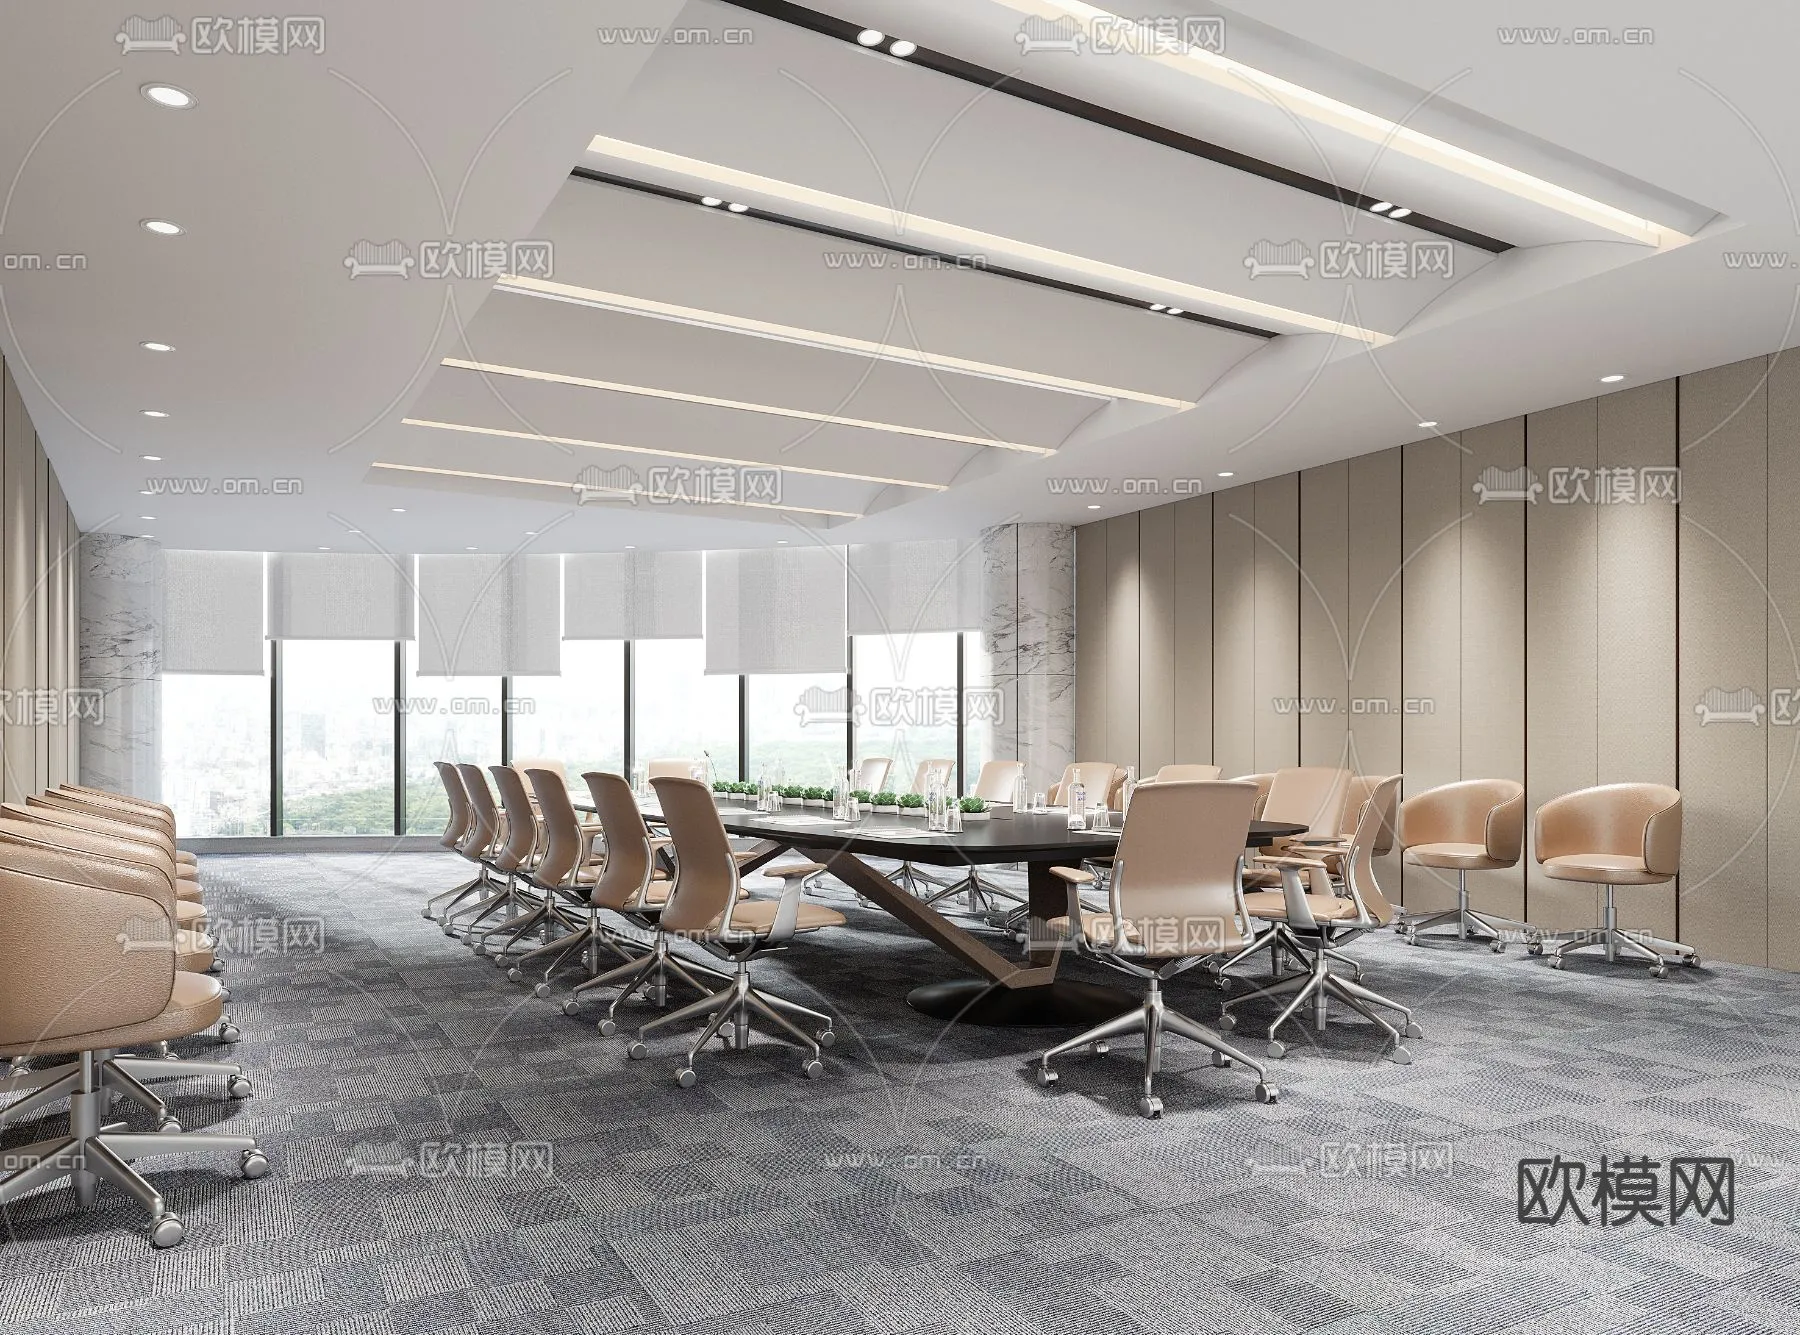 Meeting Room 3D Scenes – 1502